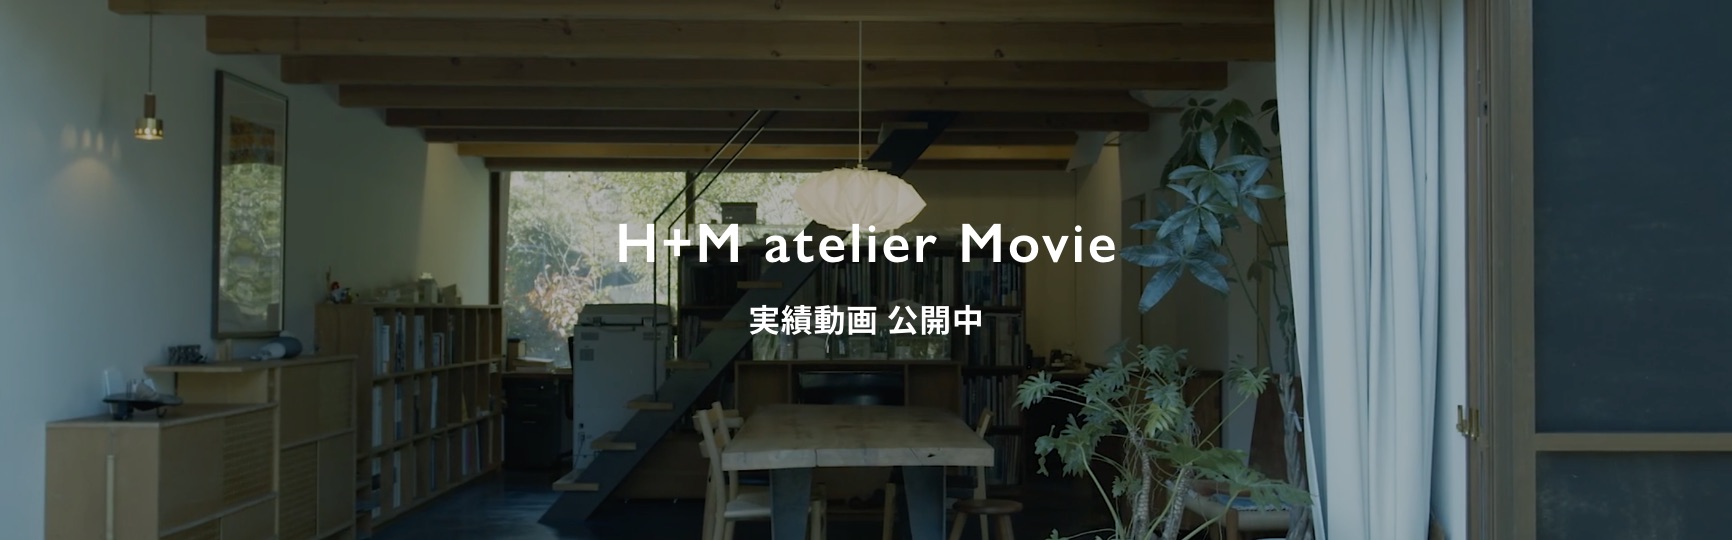 H+M atelier Movie